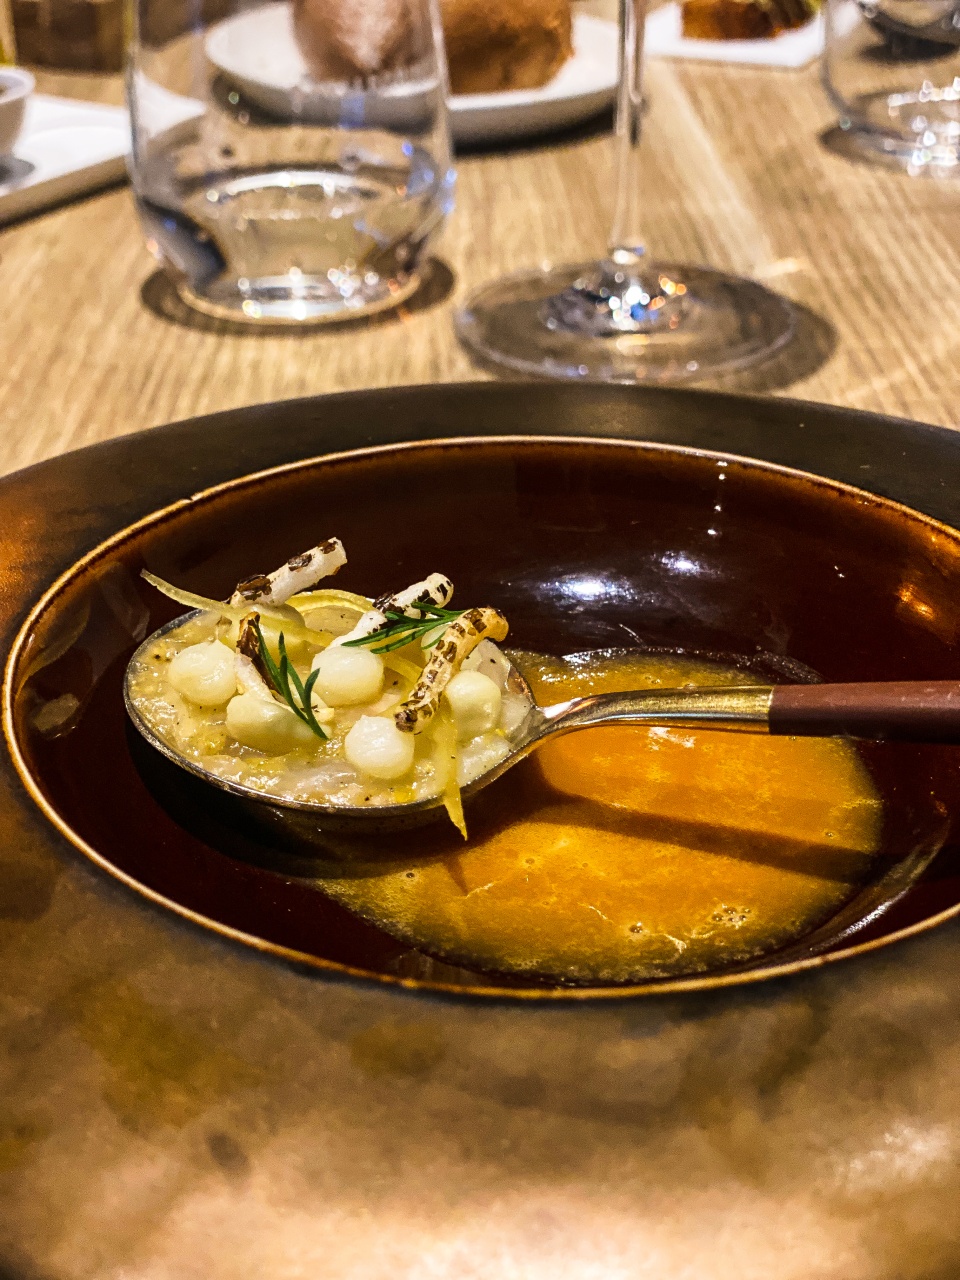 Een verleidelijk duo van krab, vakkundig bereid in twee yuzu-varianten, gepresenteerd op een kunstzinnig bord, weerspiegelt de inventiviteit en vakmanschap van Restaurant Zappaz in Leuven